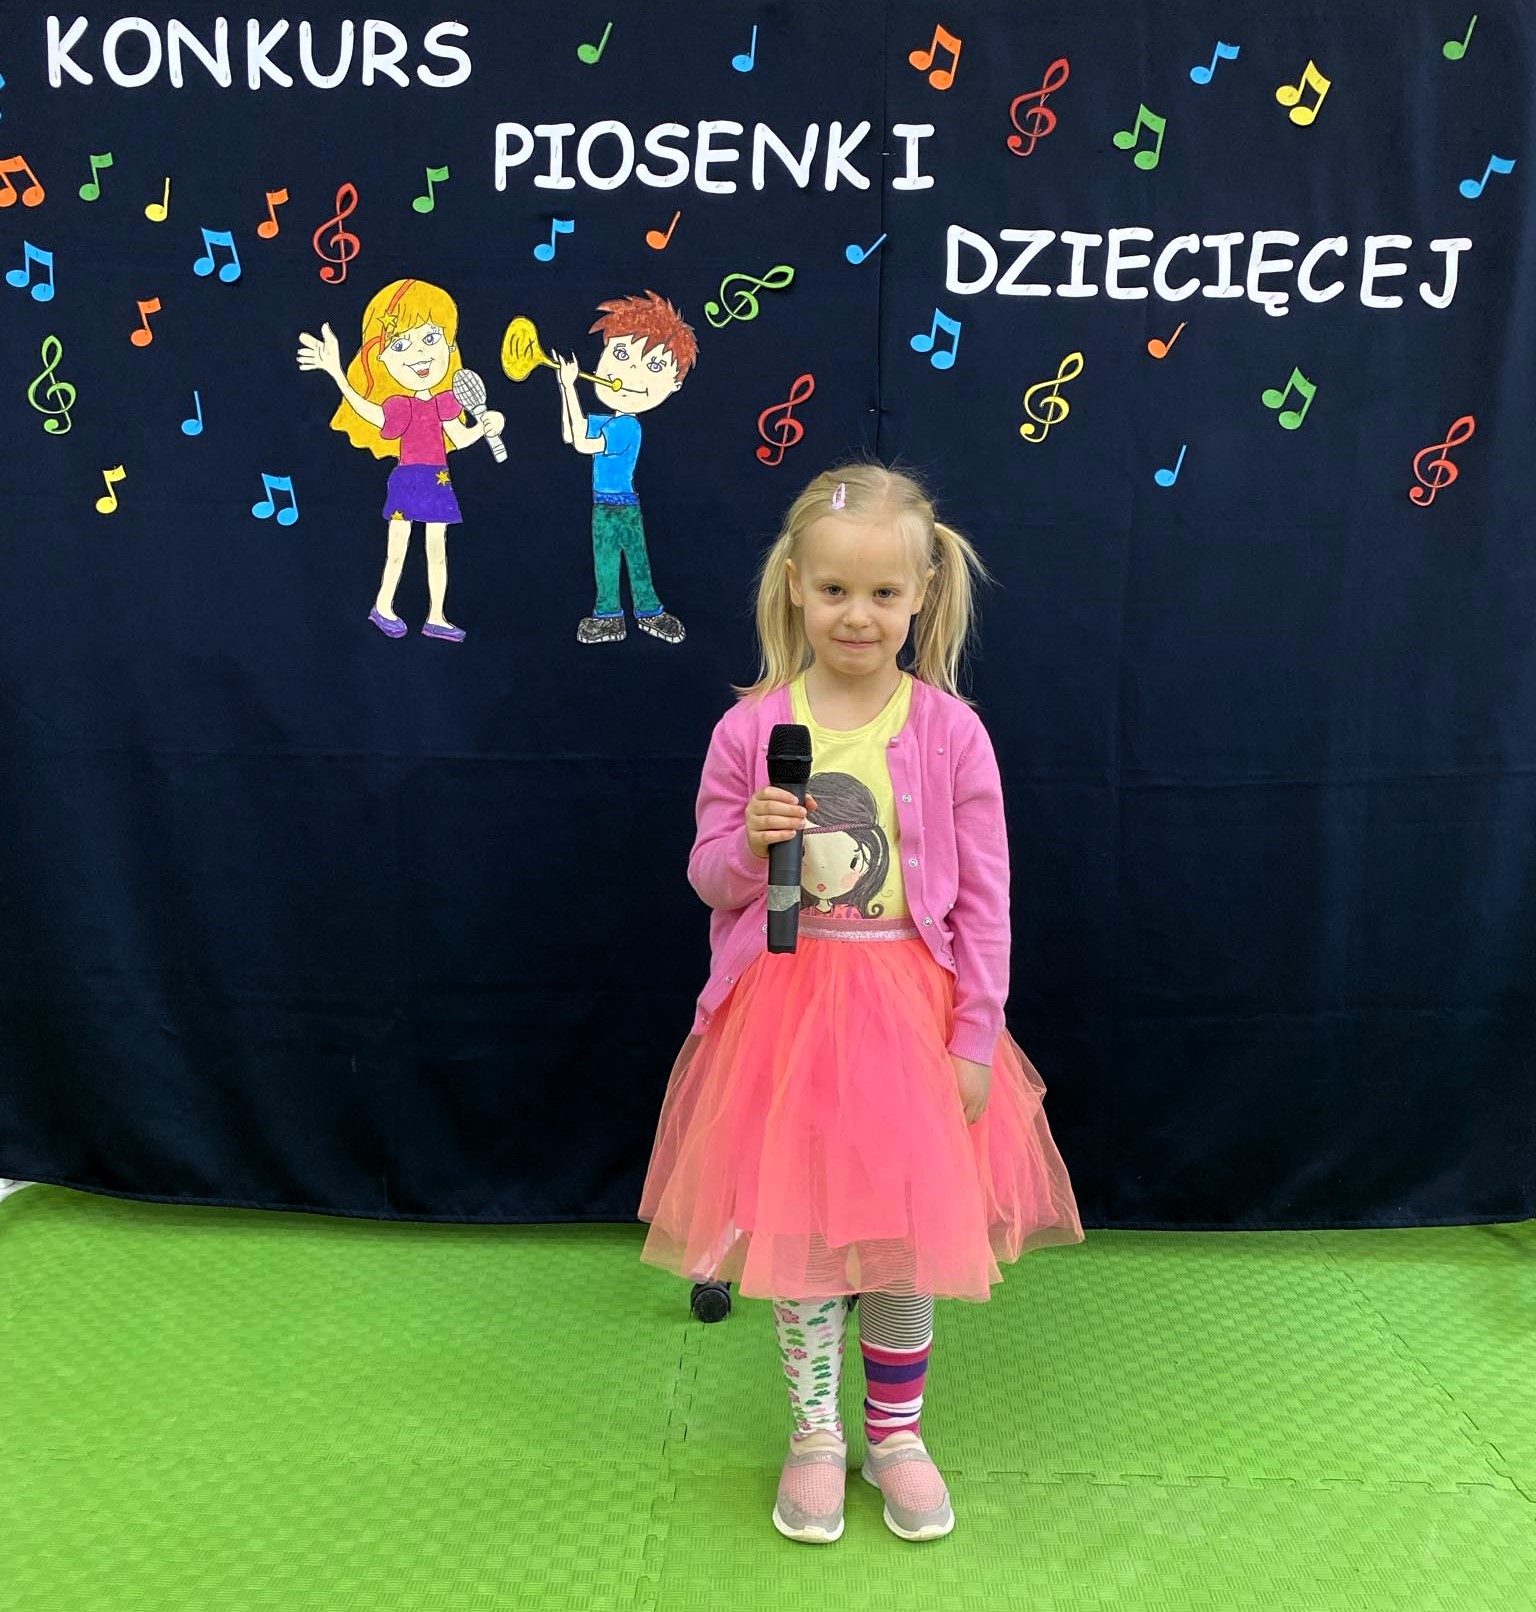 W sali lekcyjnej na tle dekoracji z napisem „Konkurs piosenki dziecięcej”, stoi dziewczynka i trzyma mikrofon.